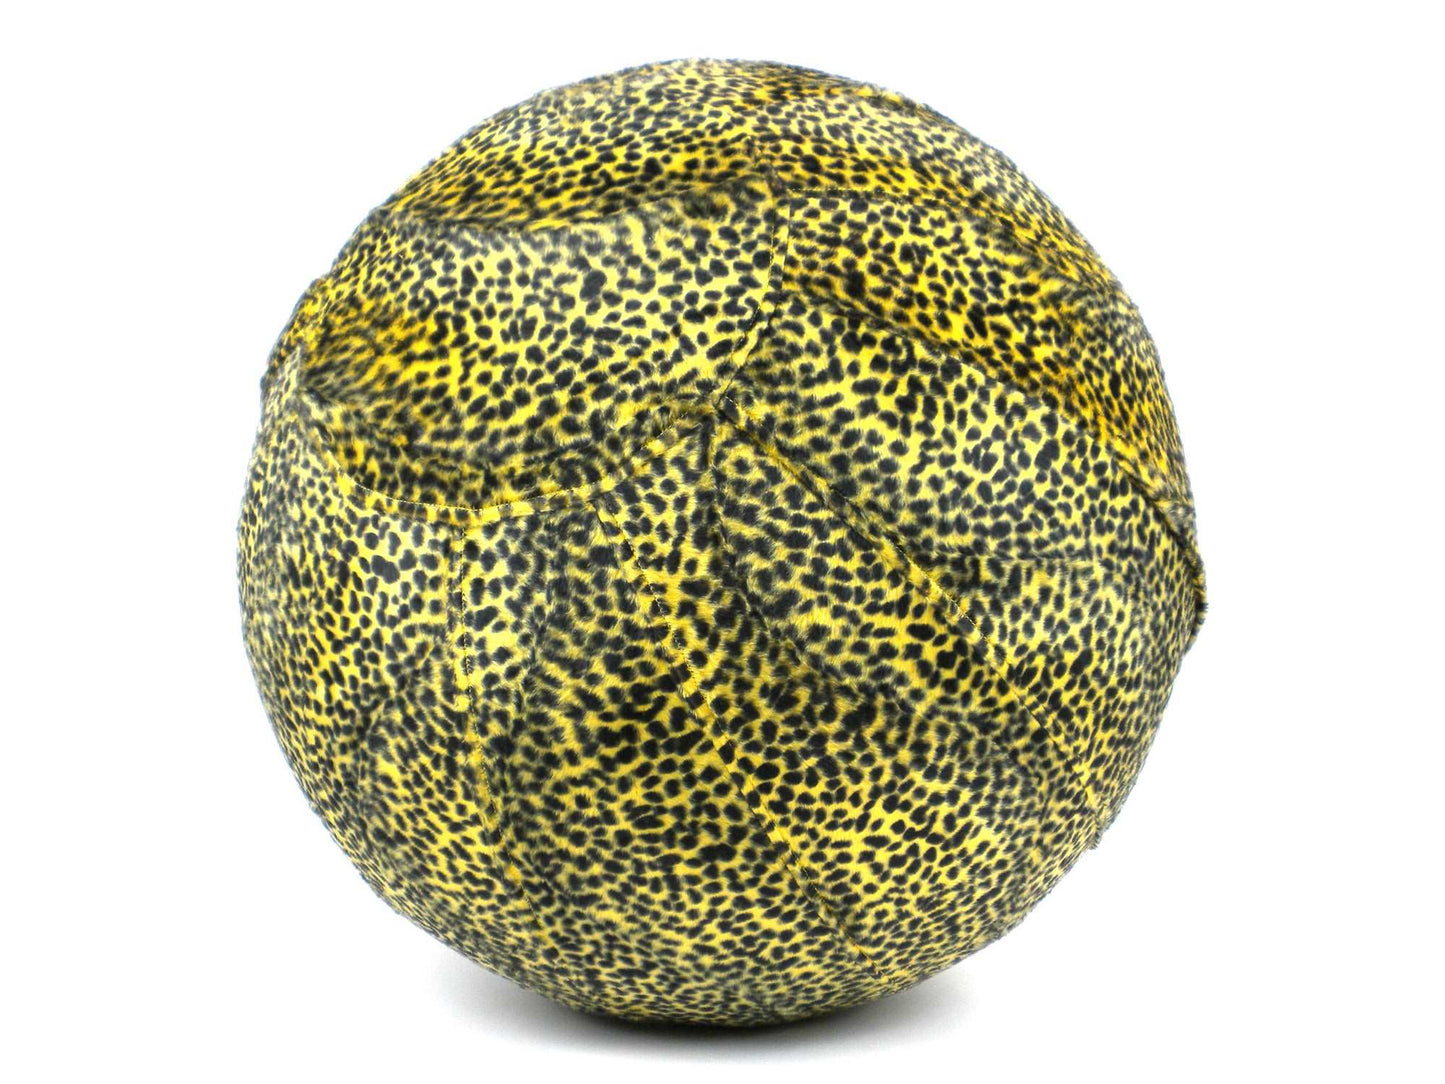 55cm Balance Ball / Yoga Ball Cover: Yellow Cheetah